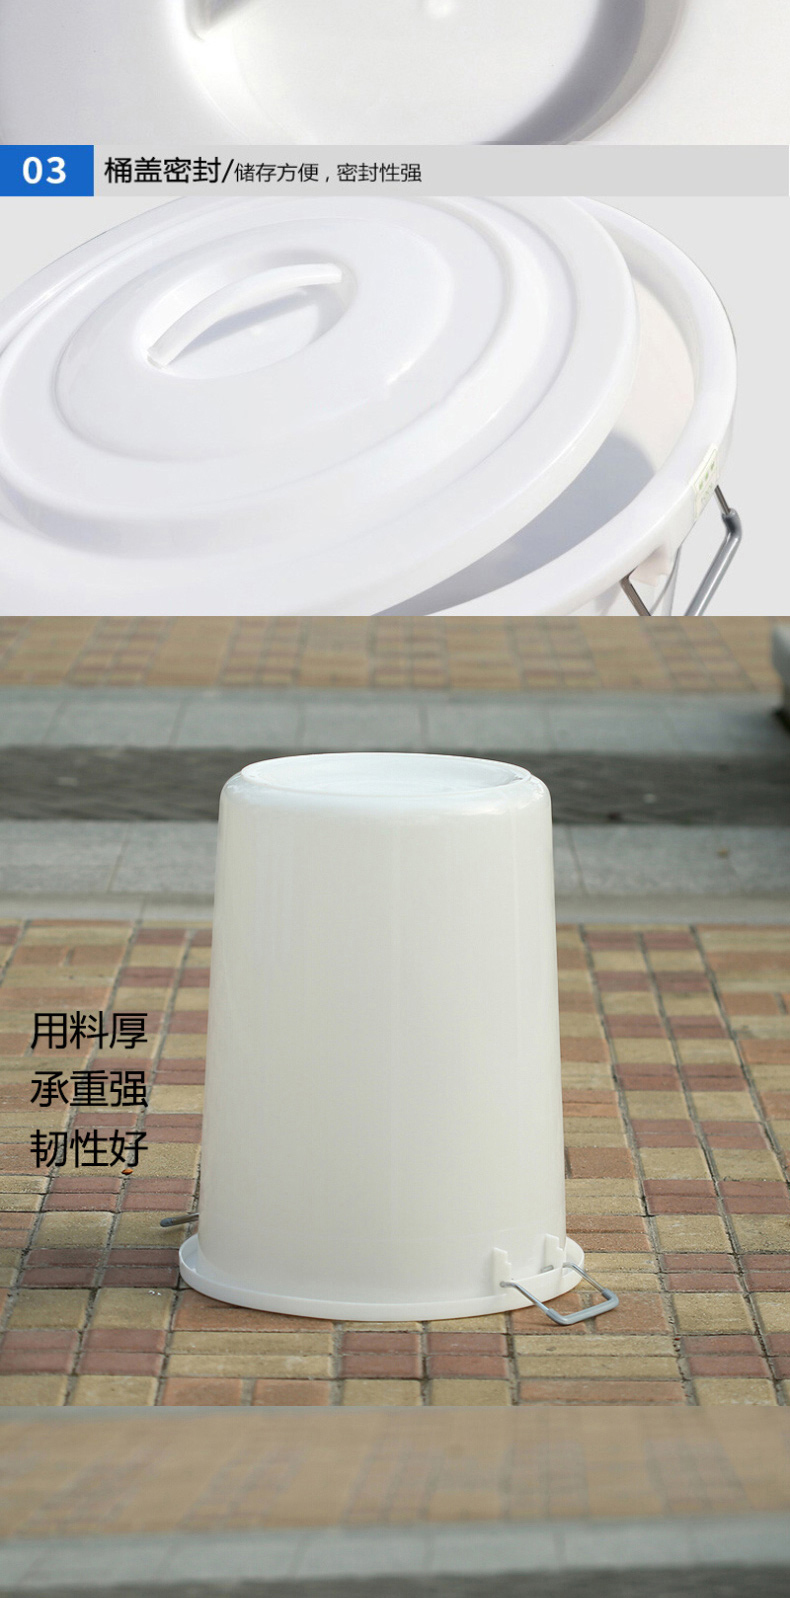 羽佳 YUJIA 塑料垃圾桶 100L 白色B桶